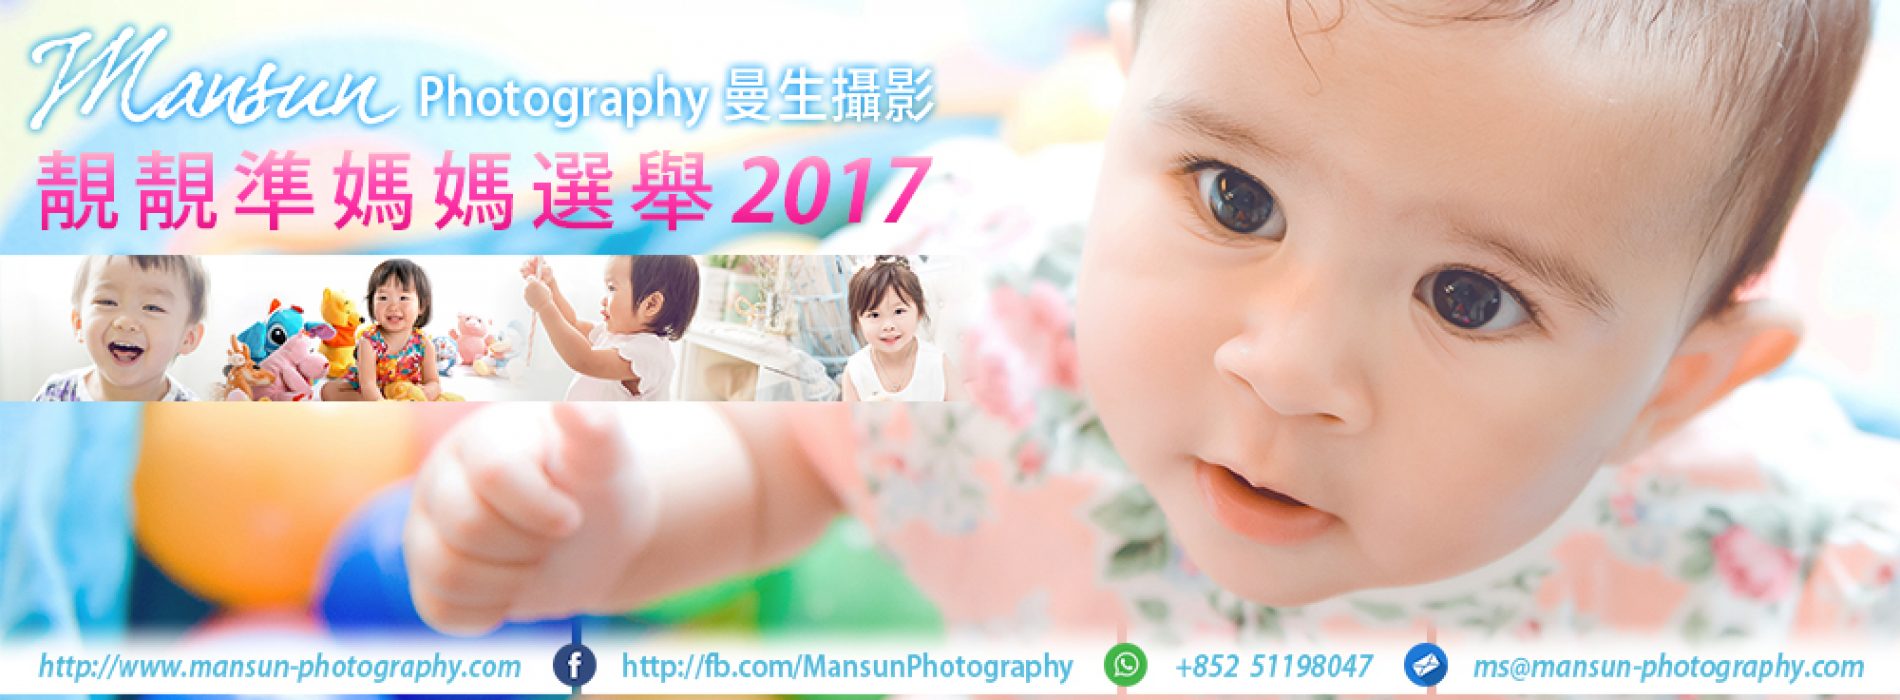 百家寶X Mansun Photography「靚靚準媽媽選舉2017」送總值 $4,600 初生嬰孩家庭攝影服務